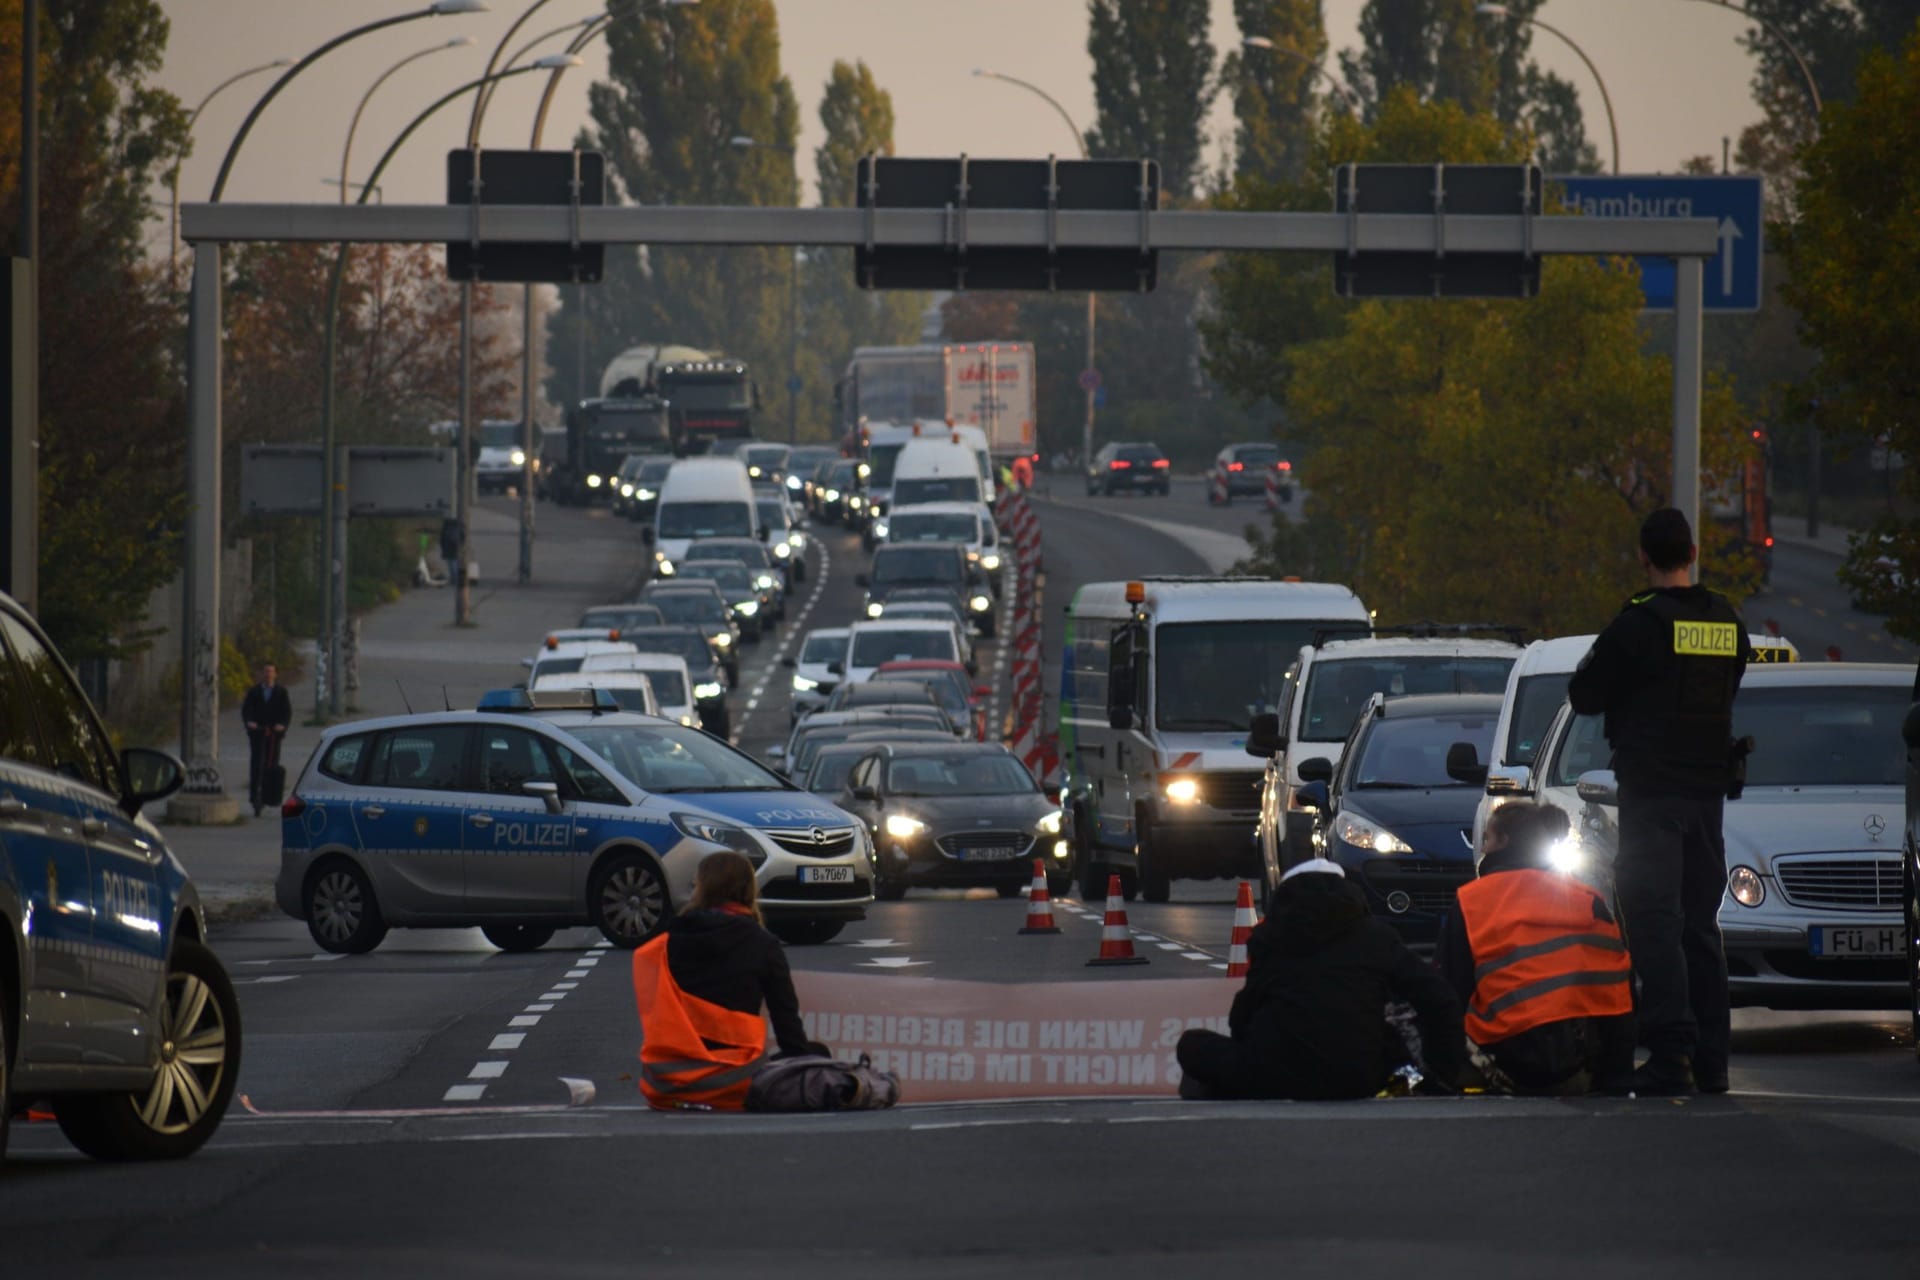 Autobahnblockade der Gruppe "Letzte Generation": Mehr als 60 Straßenblockaden führte die Gruppe allein in diesem Jahr durch. Vor wenigen Tagen konnte ein Rettungswagen nicht zu einem Unfallort aufgrund der Blockade. Dies löste deutschlandweit eine Diskussion über die Protestaktionen aus.